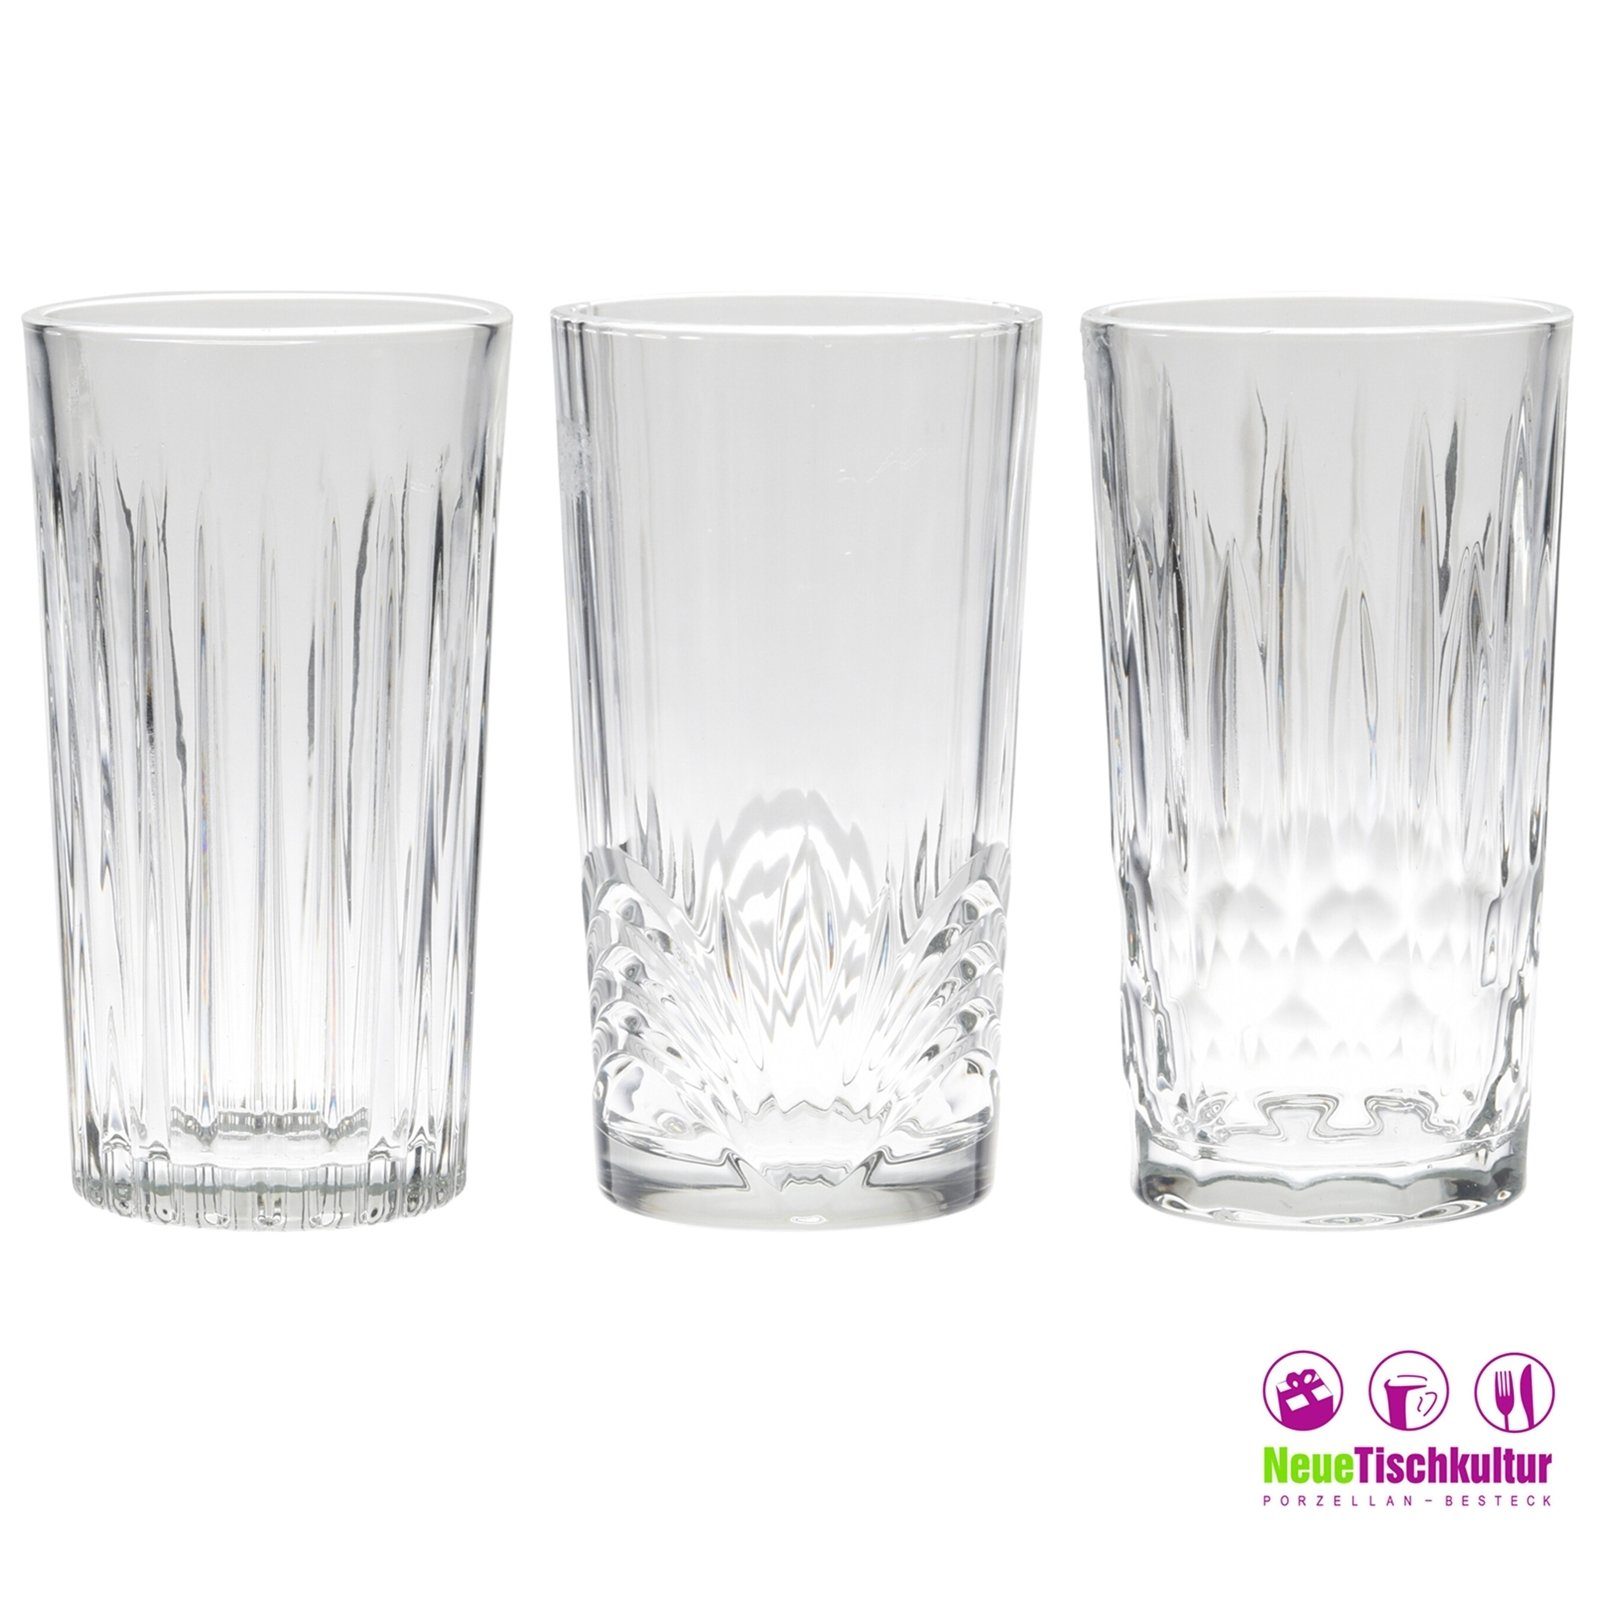 Neuetischkultur Glas Wasserglas-Set geschliffene 3-tlg. Glas, verschieden Gläser geschliffen, Gläserset